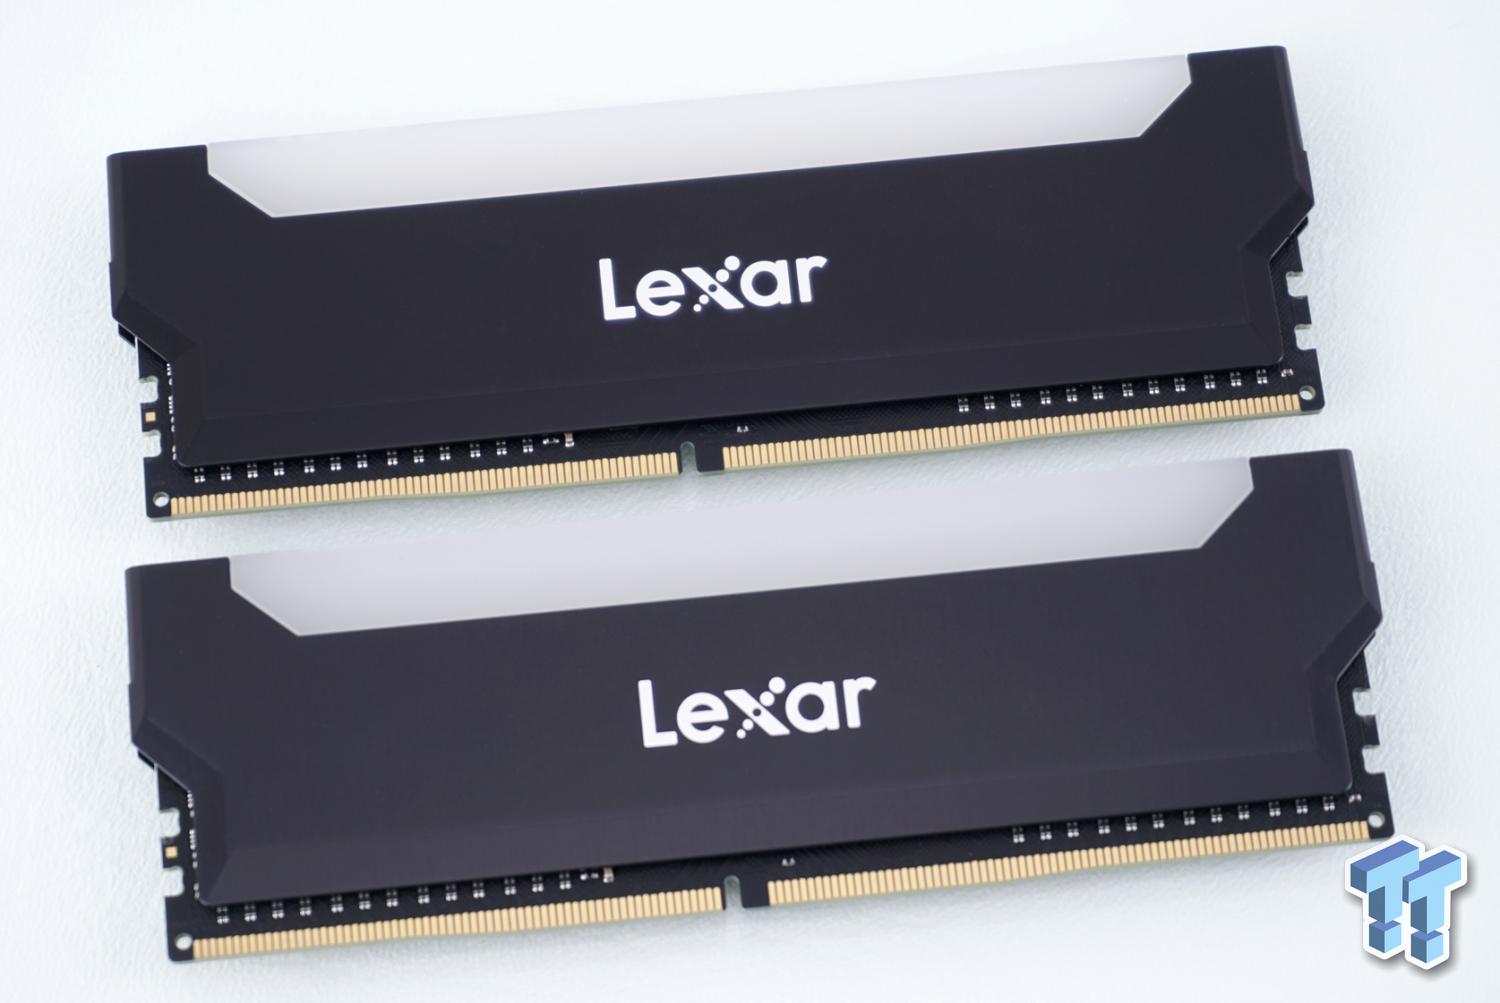 Lexar Hades OC - DDR4 - kit - 32 GB: 2 x 16 GB - DIMM 288-pin - 3600 MHz /  PC4-28800 - unbuffered